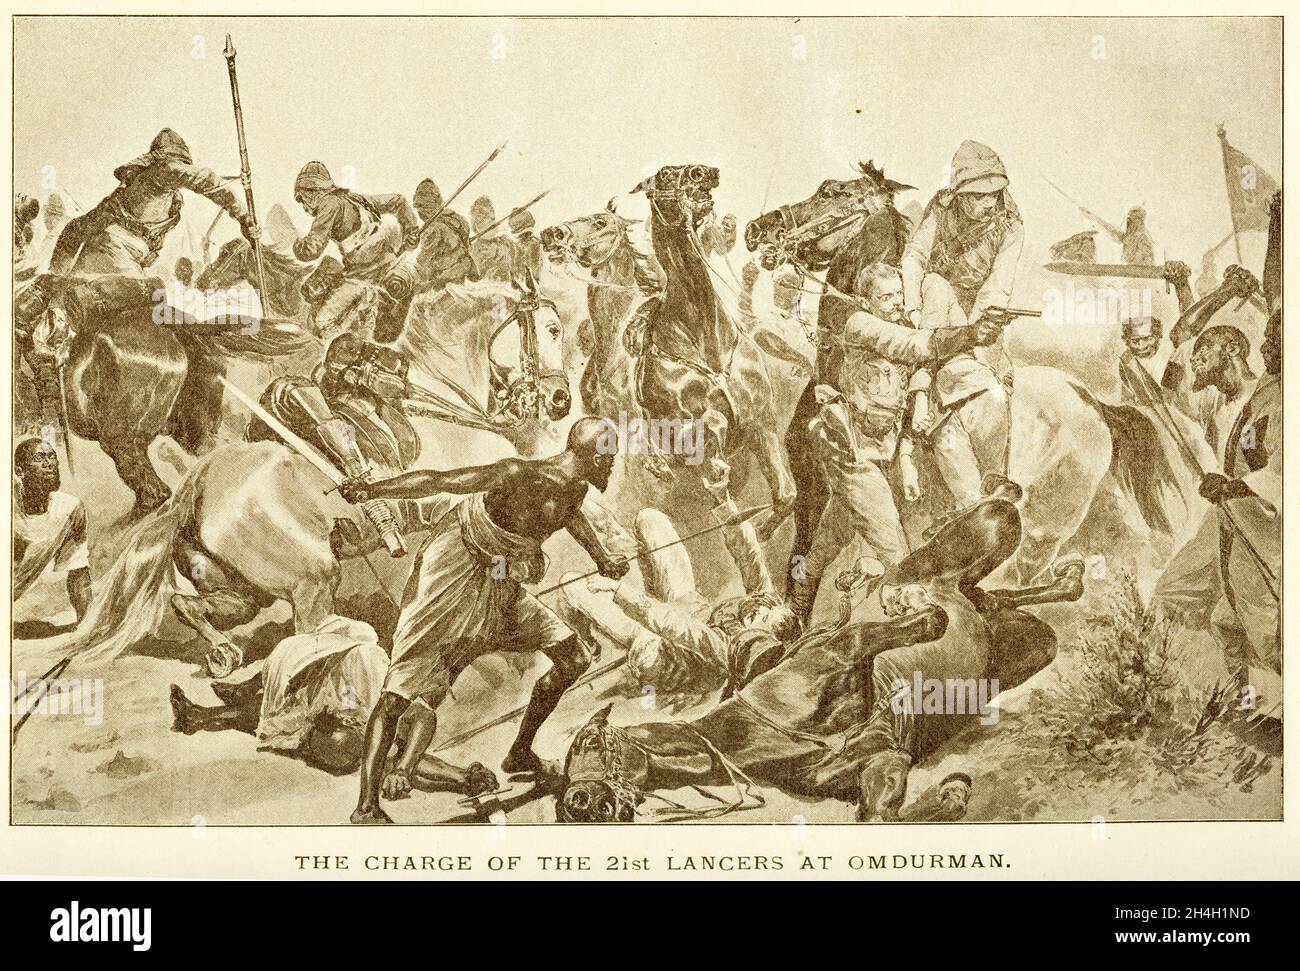 Die Schlacht von Omdurman im Jahr 1898 (die tatsächlich im nahegelegenen Dorf Kerreri stattfand), als Lord Kitchener die mahdistischen Truppen entscheidend besiegte. Im folgenden Jahr töteten britische Truppen Abdallahi ibn Muhammad, den Khalifa, und sicherten damit die britische Kontrolle über den Sudan. Stockfoto